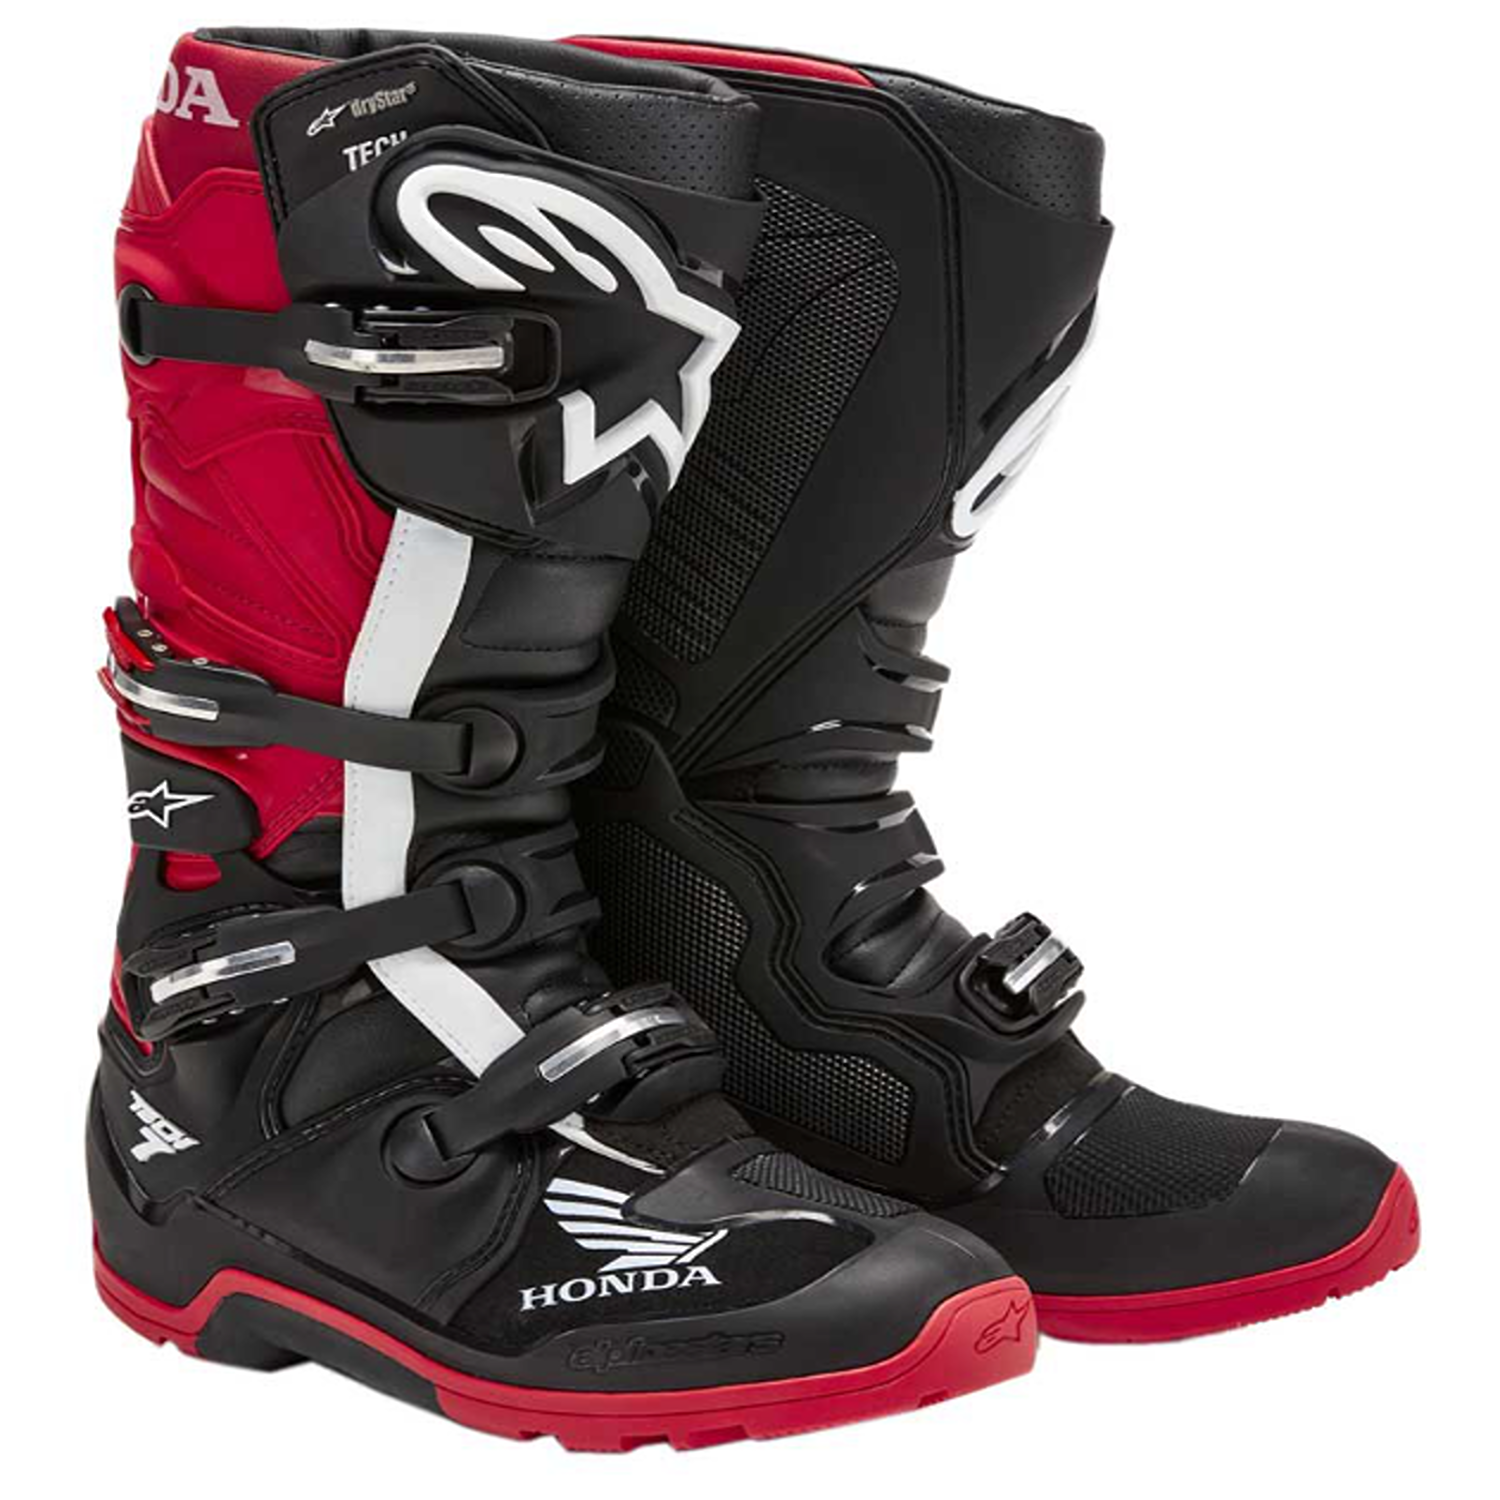 Image of Alpinestars Honda Tech 7 Enduro Drystar Boots Black Bright Red Talla US 9